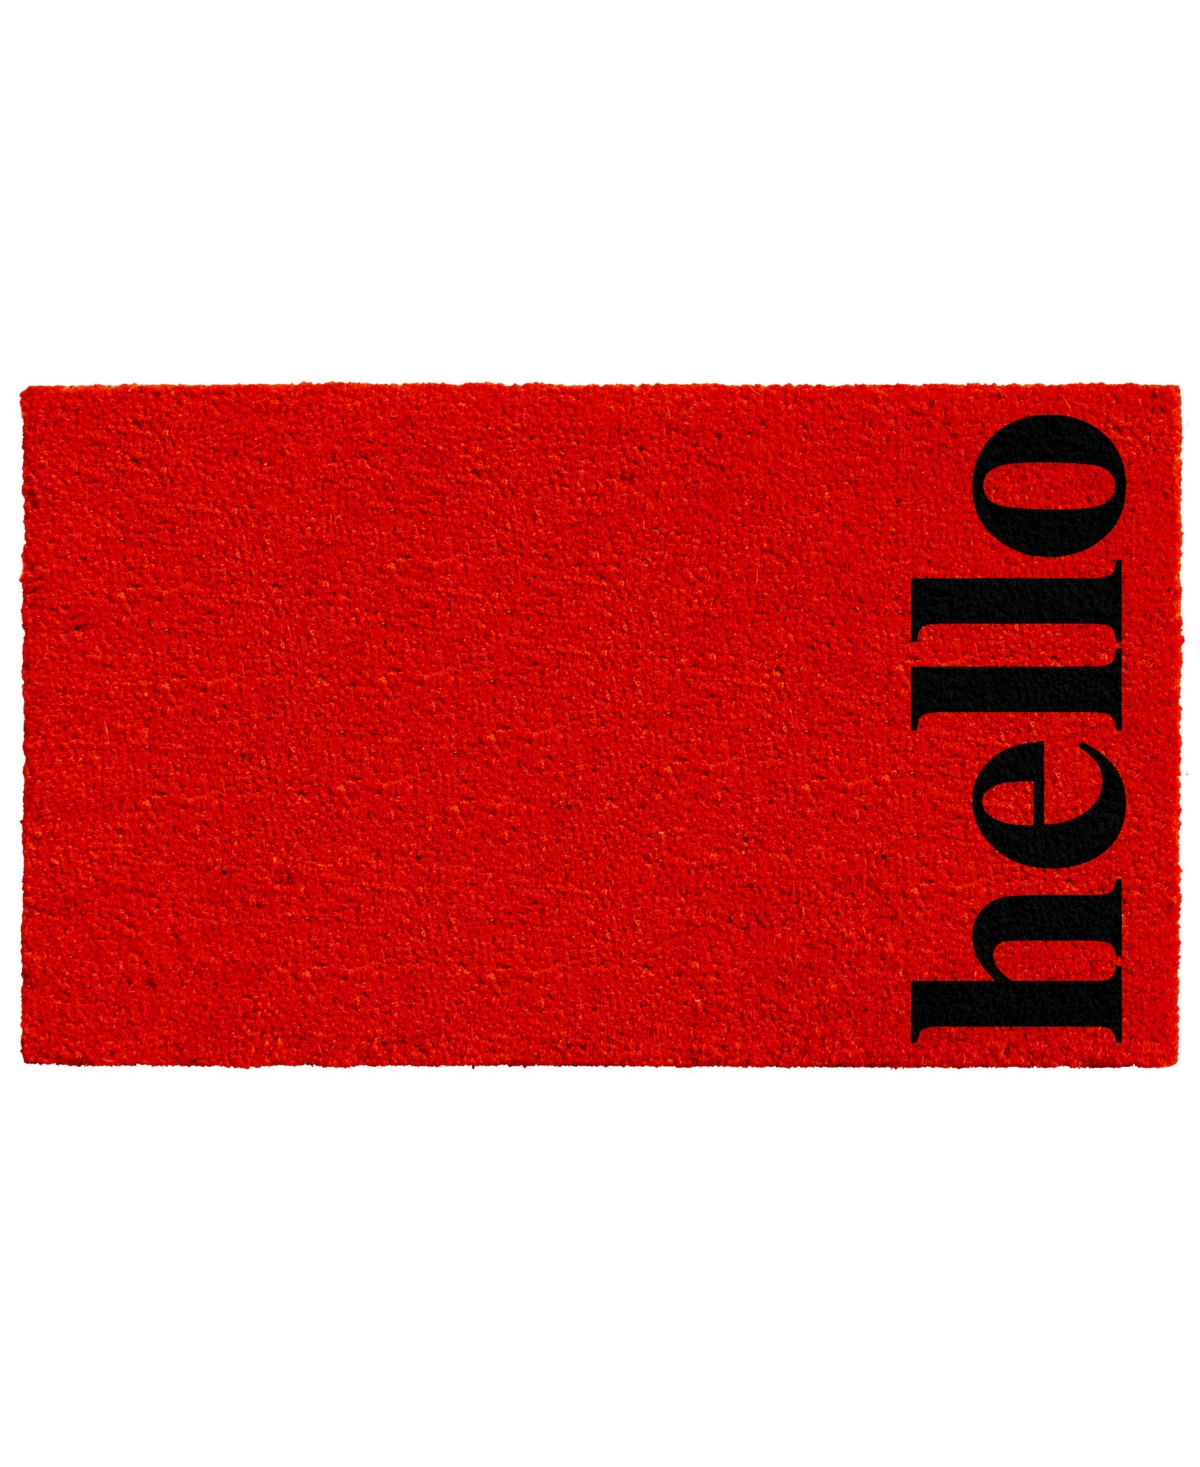 Home & More Vertical Hello Coir/vinyl Doormat, 24" X 36" In Red,black